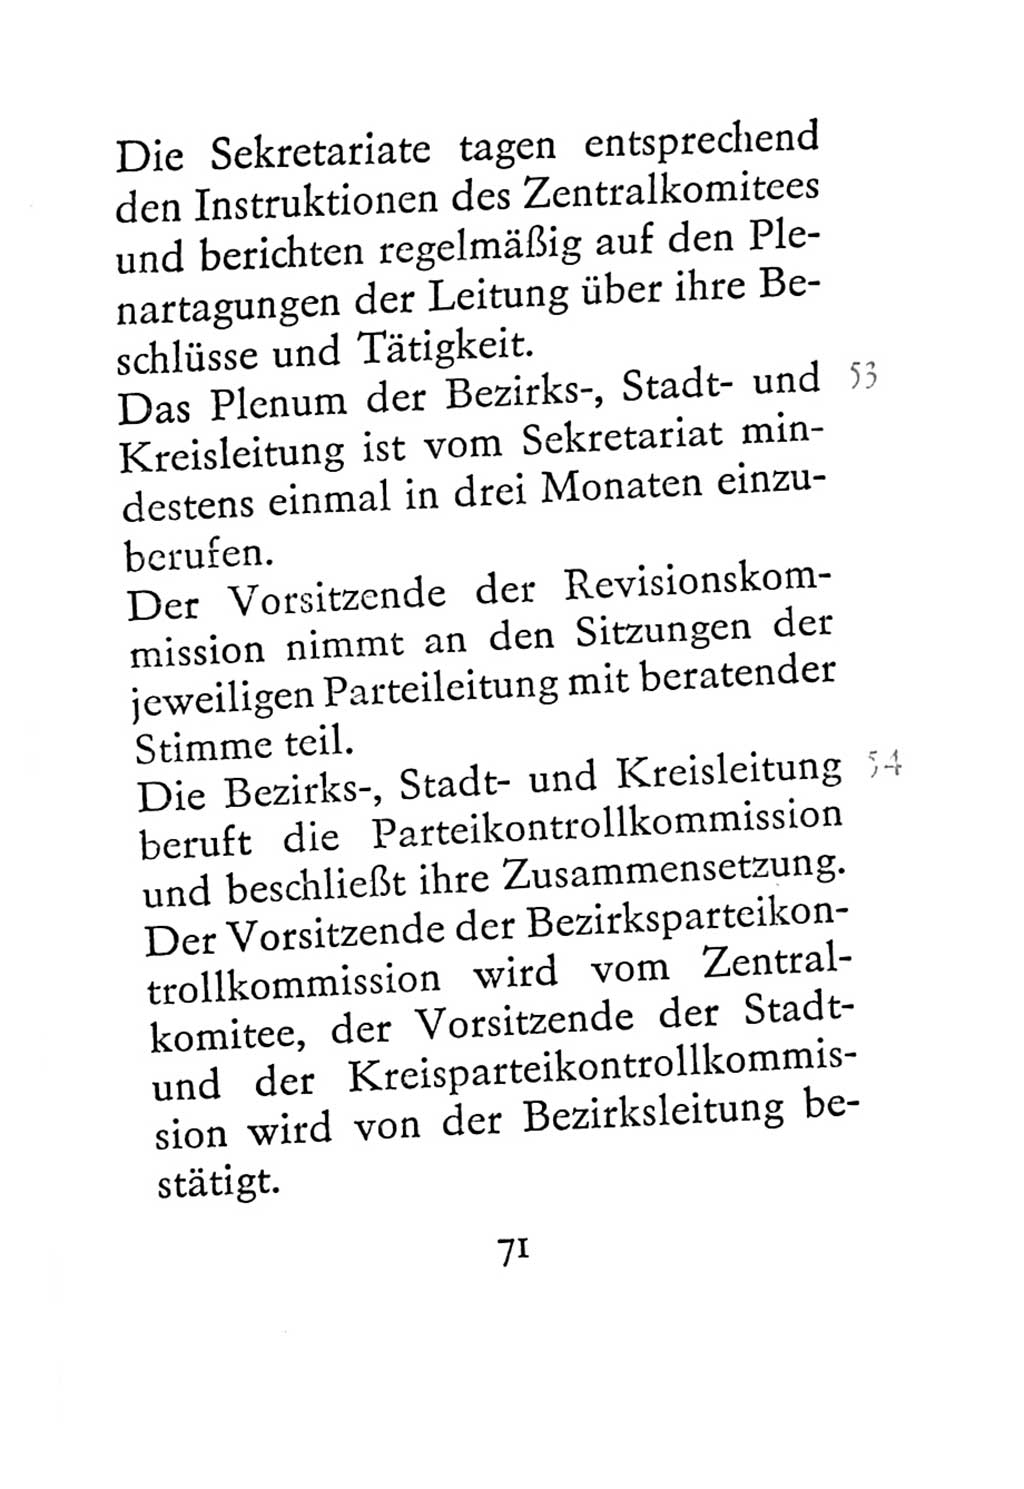 Statut der Sozialistischen Einheitspartei Deutschlands (SED) 1967, Seite 71 (St. SED DDR 1967, S. 71)